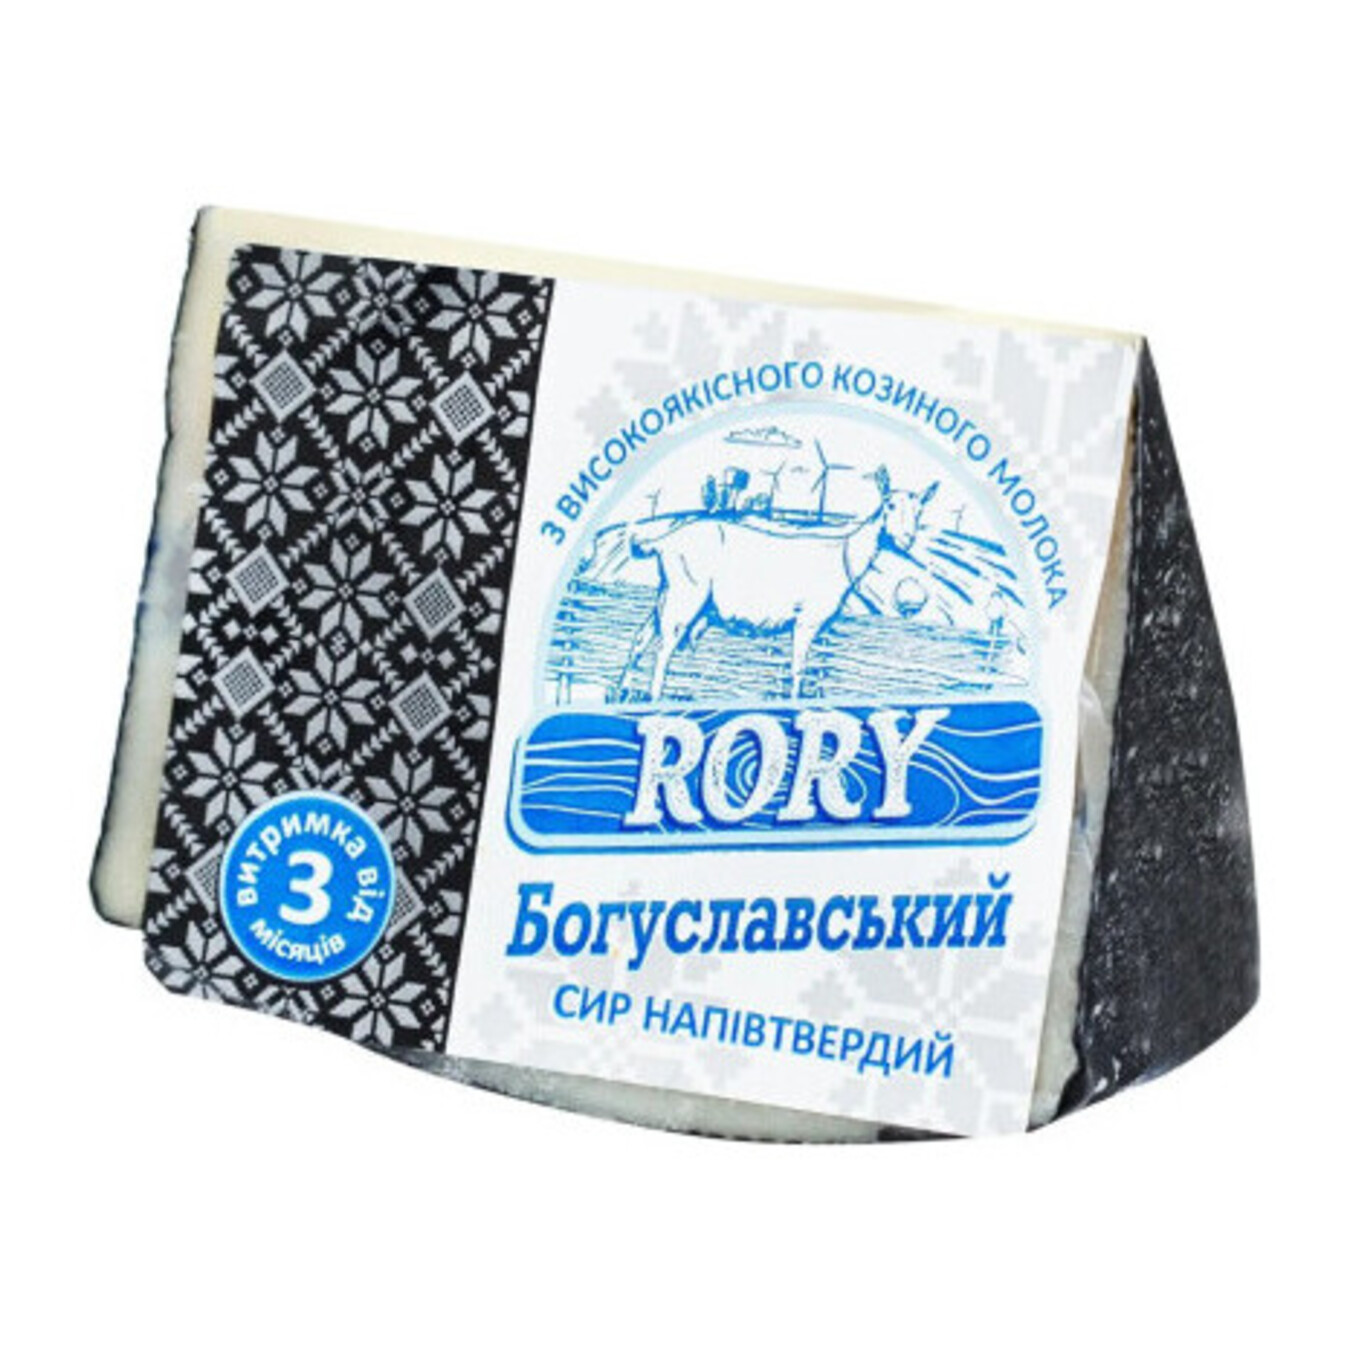 Goat cheese Rory Bohuslavskyi weight